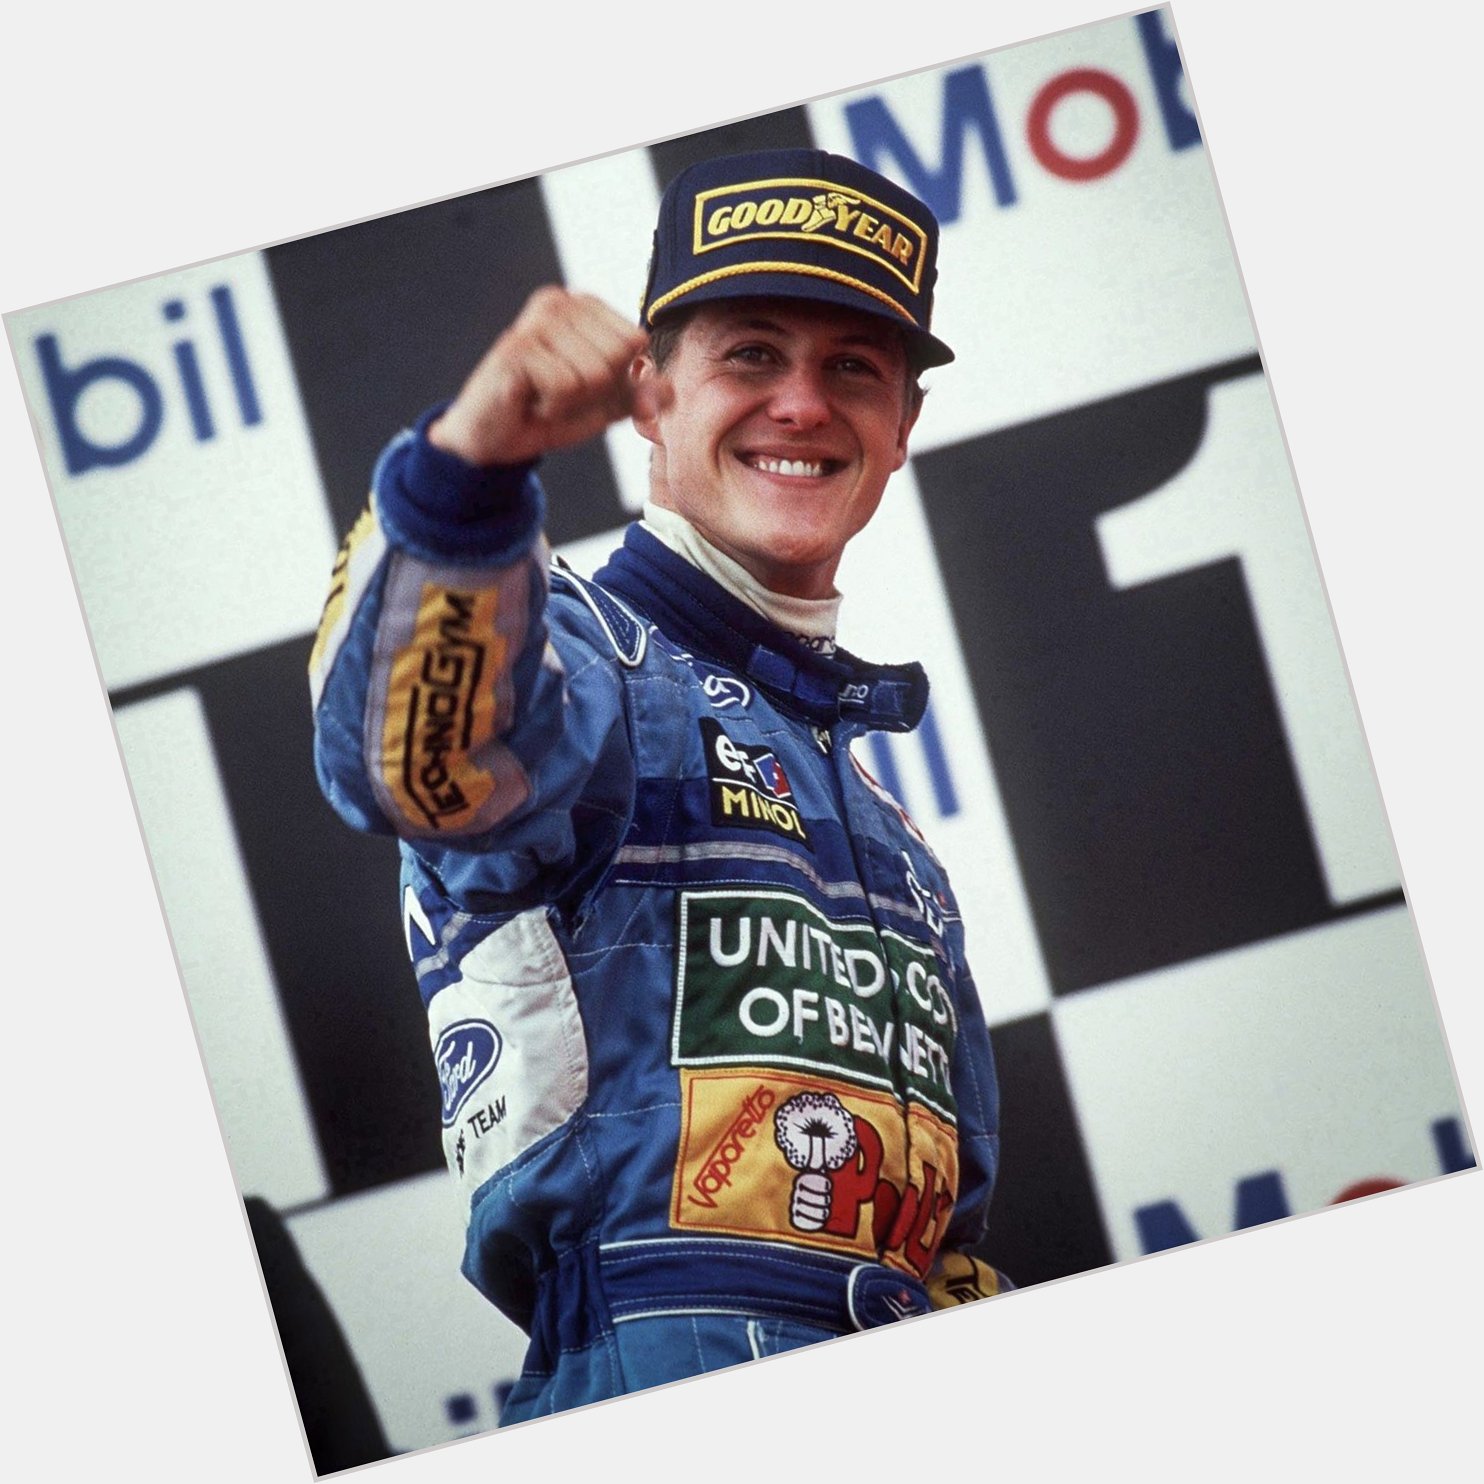 Happy Birthday Champ.
Michael Schumacher is vandaag 50 jaar geworden.  